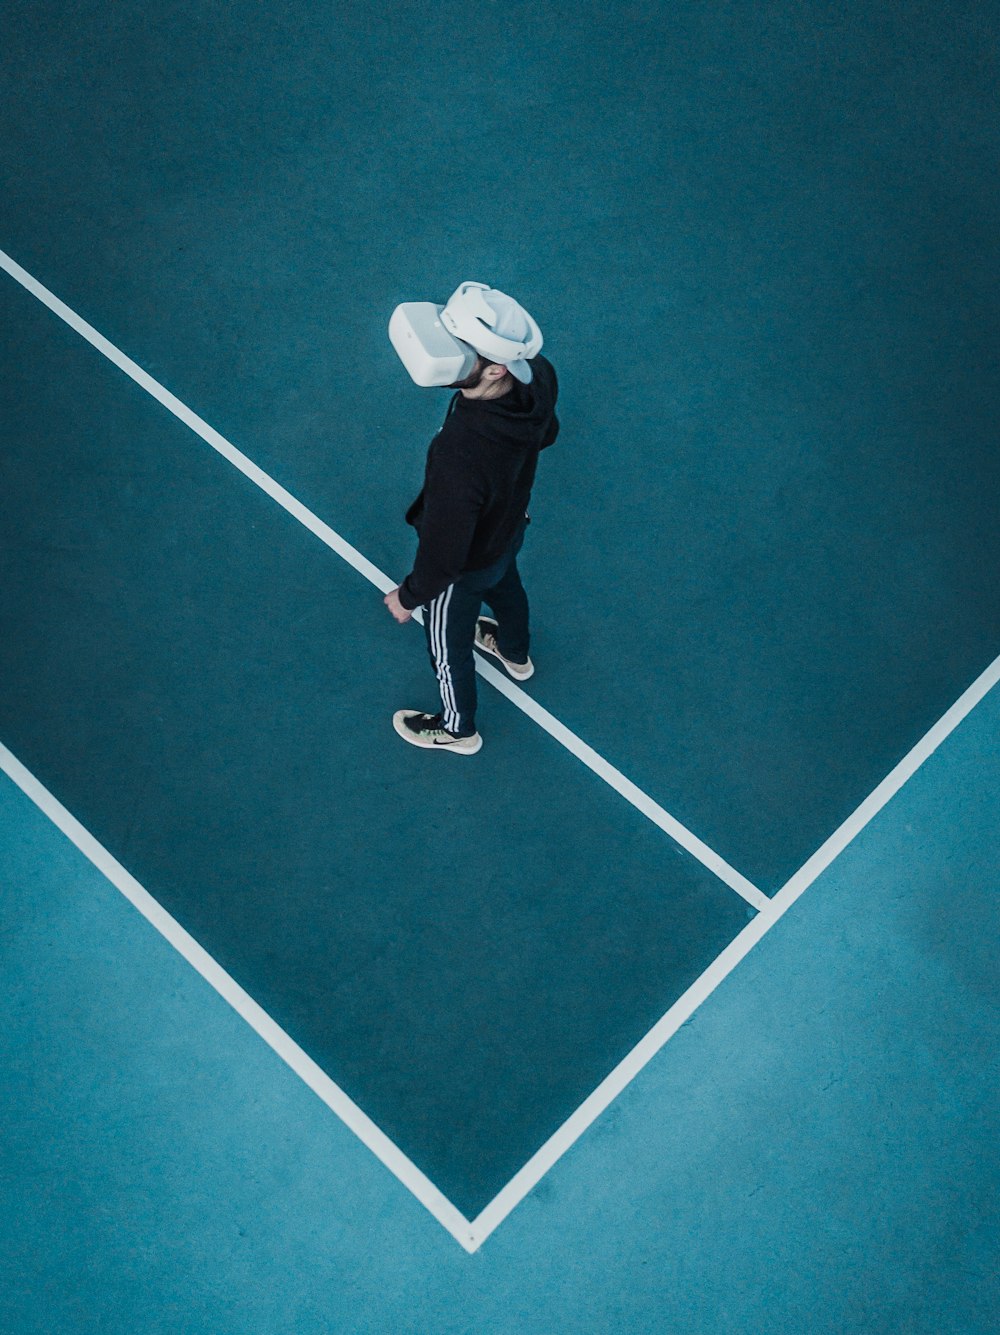 Mann im Trainingsanzug mit VR-Headset auf dem Tennisplatz